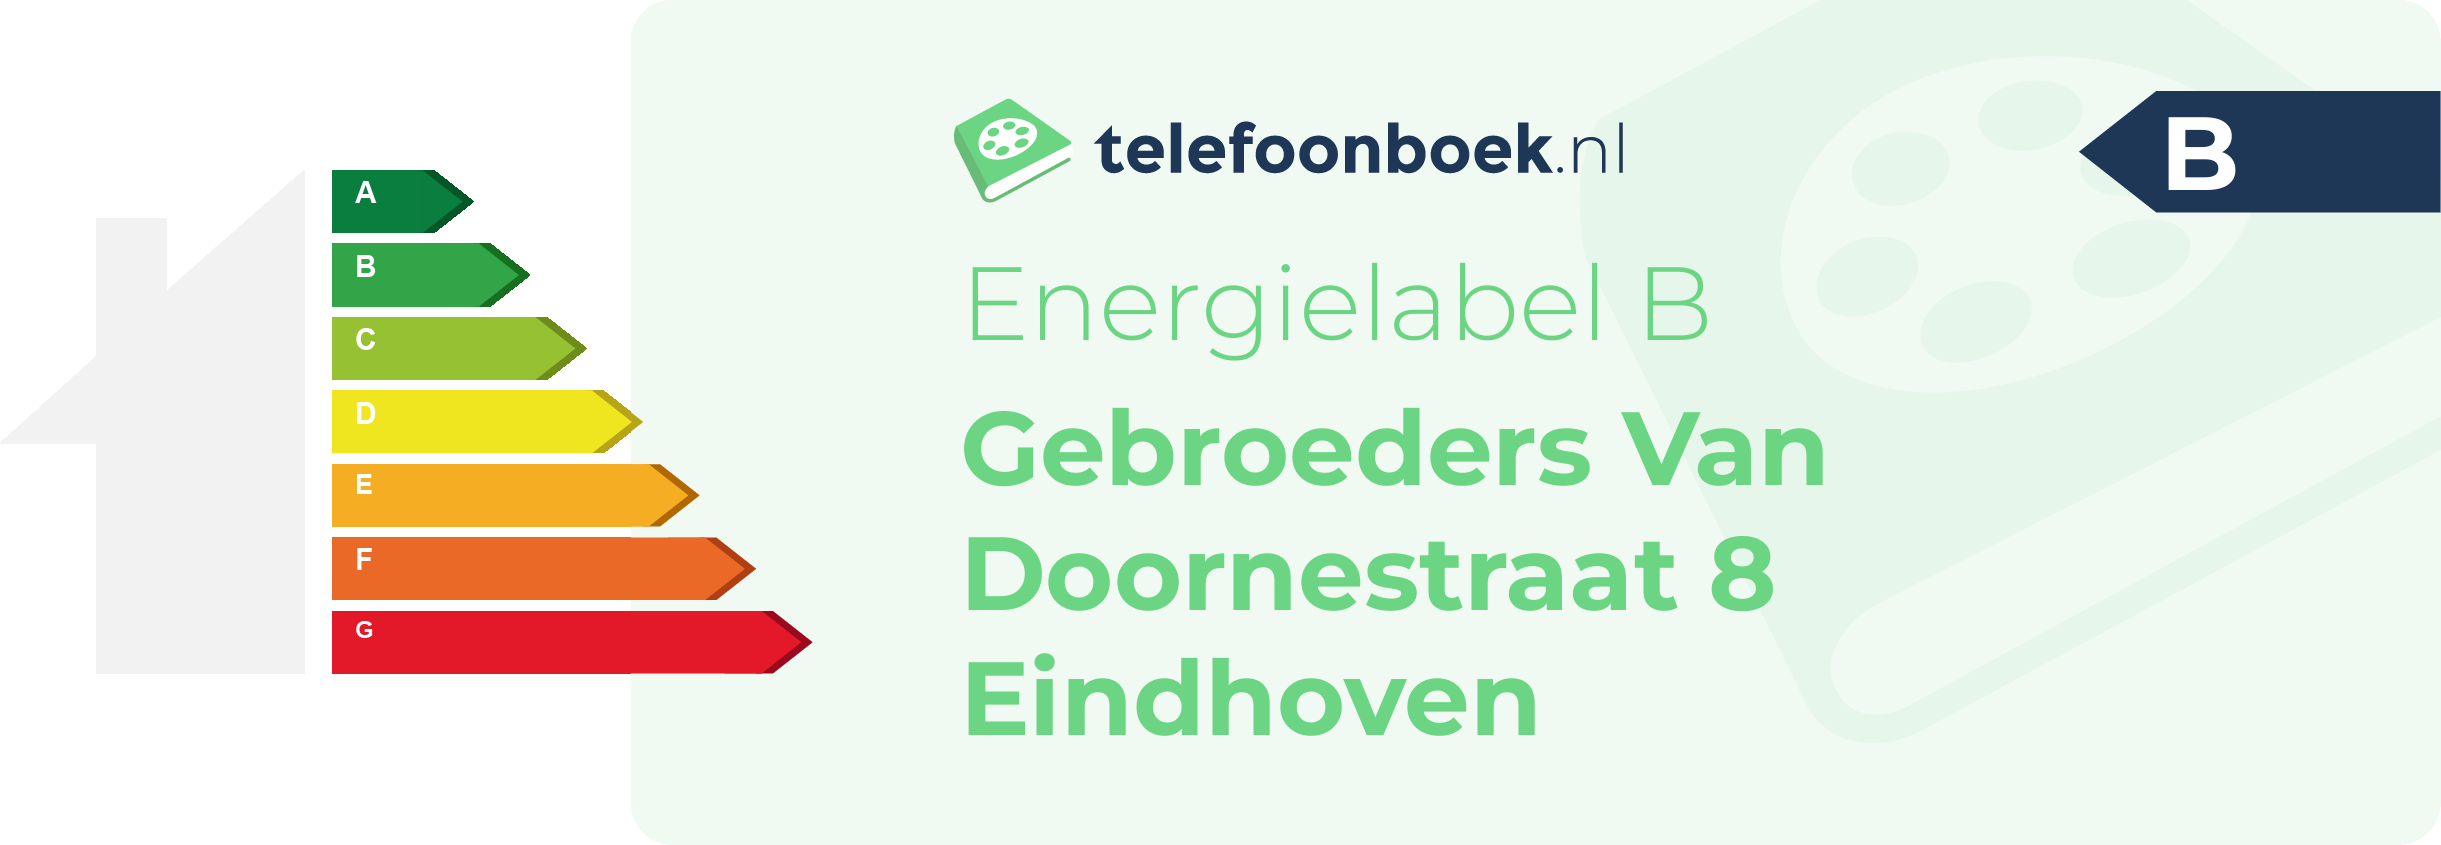 Energielabel Gebroeders Van Doornestraat 8 Eindhoven